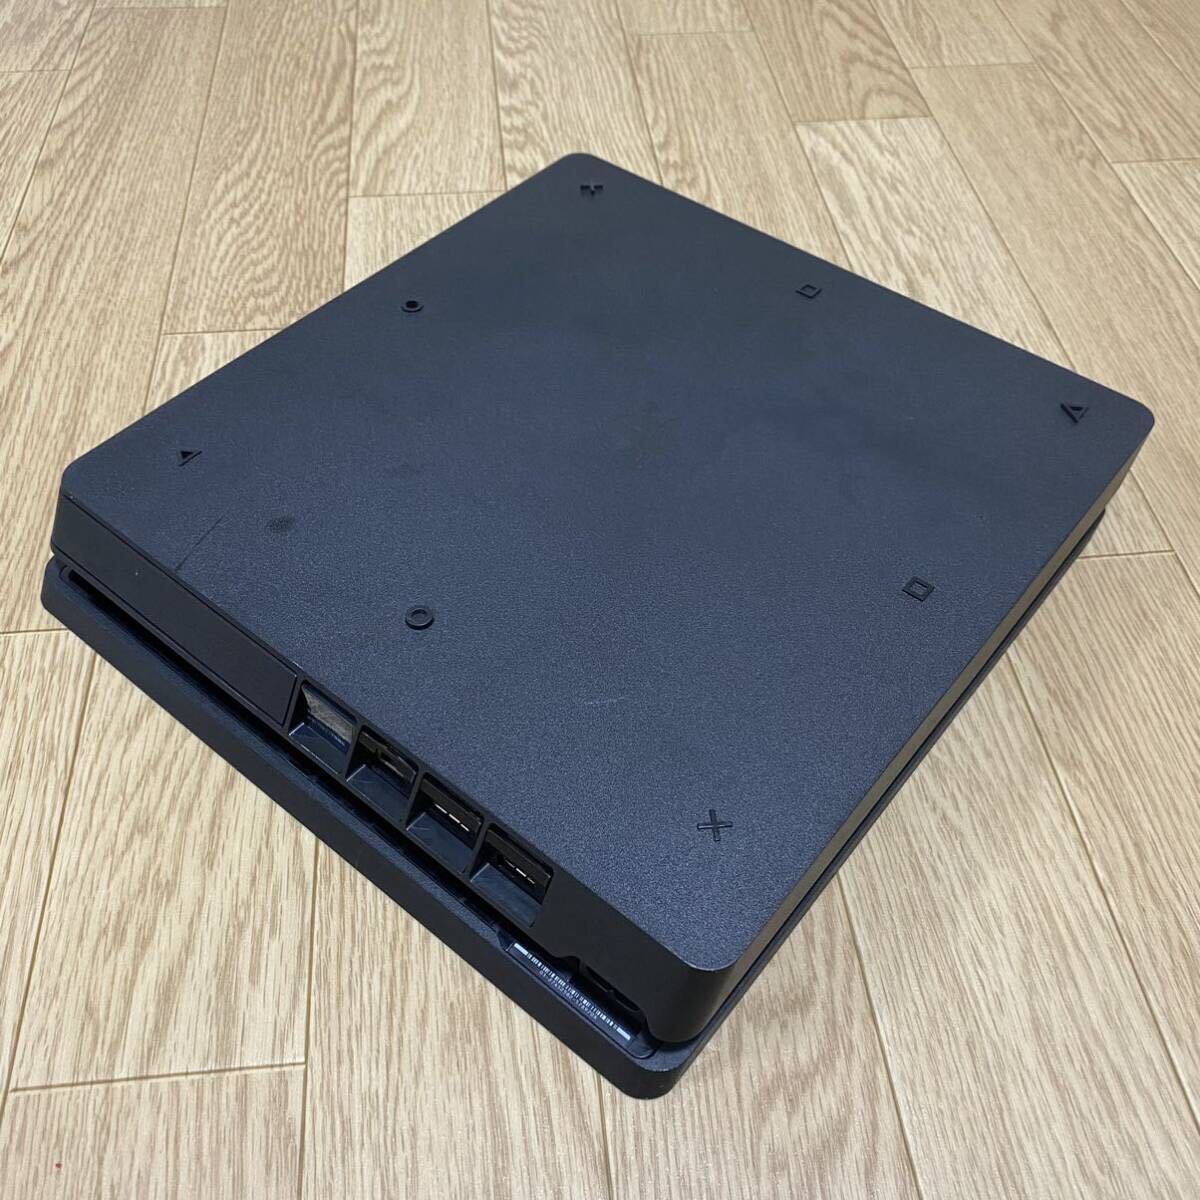 SONY  Sony PS4 сам товар  ... Station  4 PlayStation4 ...4 CUH-2200A  рабочий товар    черный  ... штамп   наклейка  есть   HDD есть   ⑩